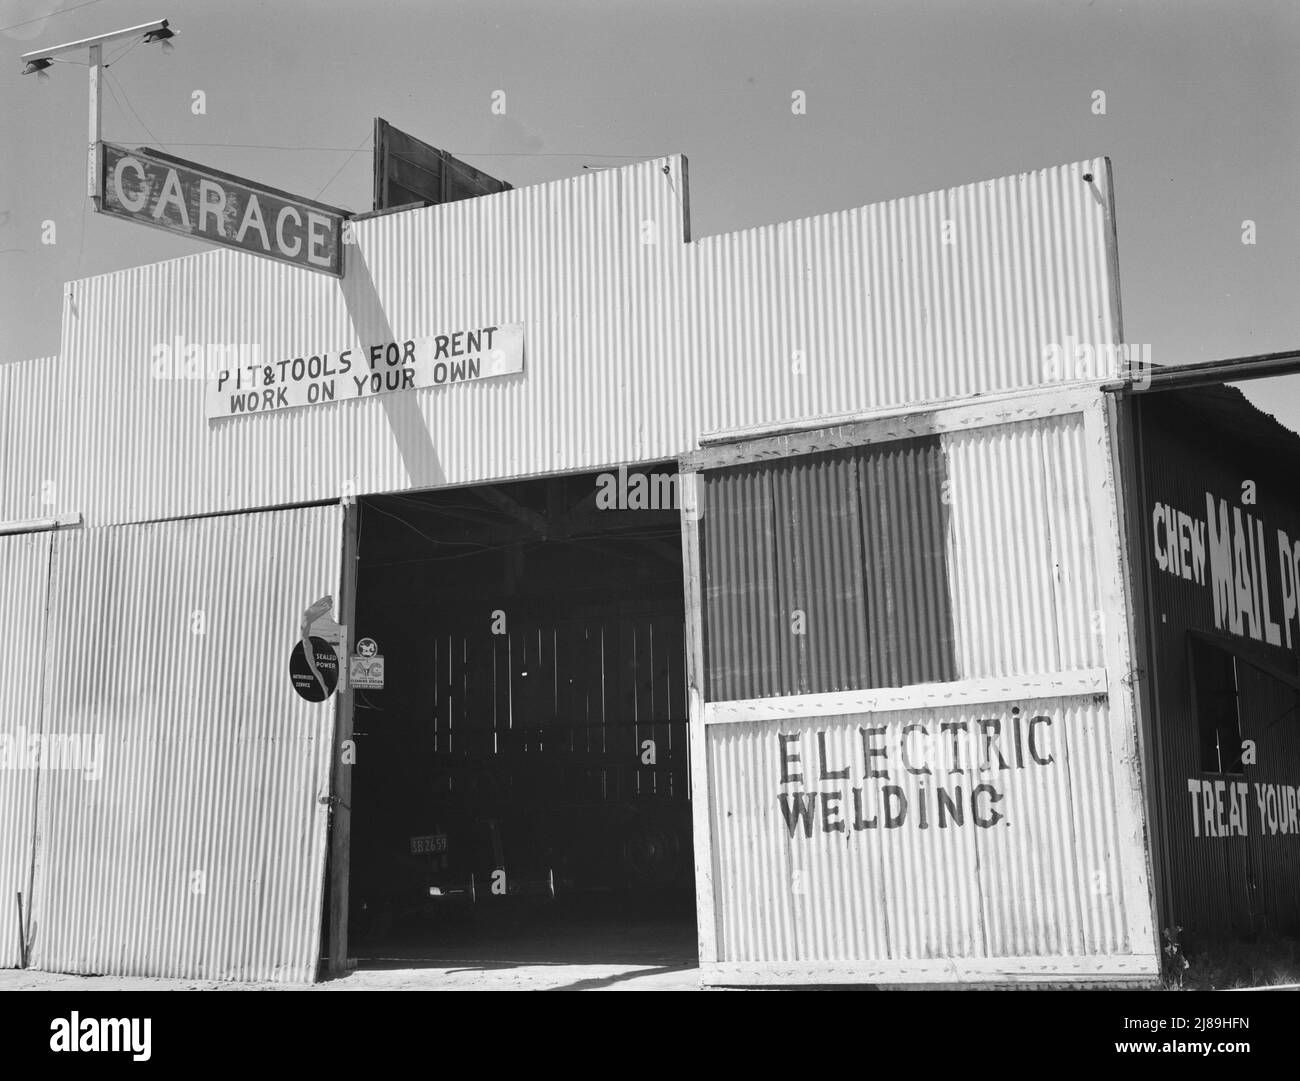 USA 99. Contea di Fresno. "Buca e strumenti per il noleggio --lavoro da soli." California. ['garage; saldatura elettrica']. Foto Stock